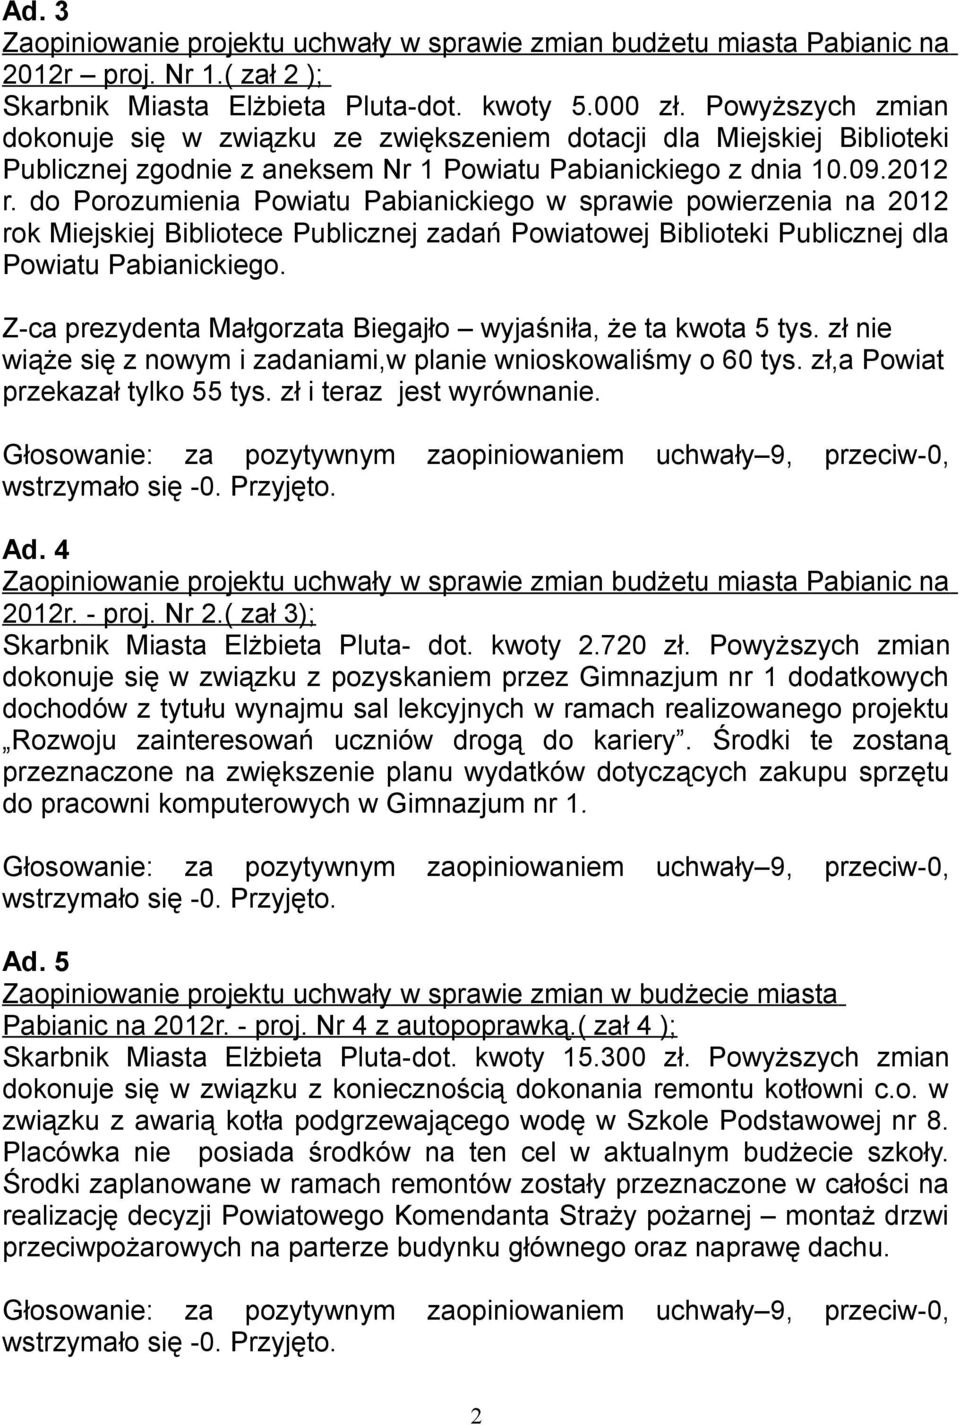 do Porozumienia Powiatu Pabianickiego w sprawie powierzenia na 2012 rok Miejskiej Bibliotece Publicznej zadań Powiatowej Biblioteki Publicznej dla Powiatu Pabianickiego.